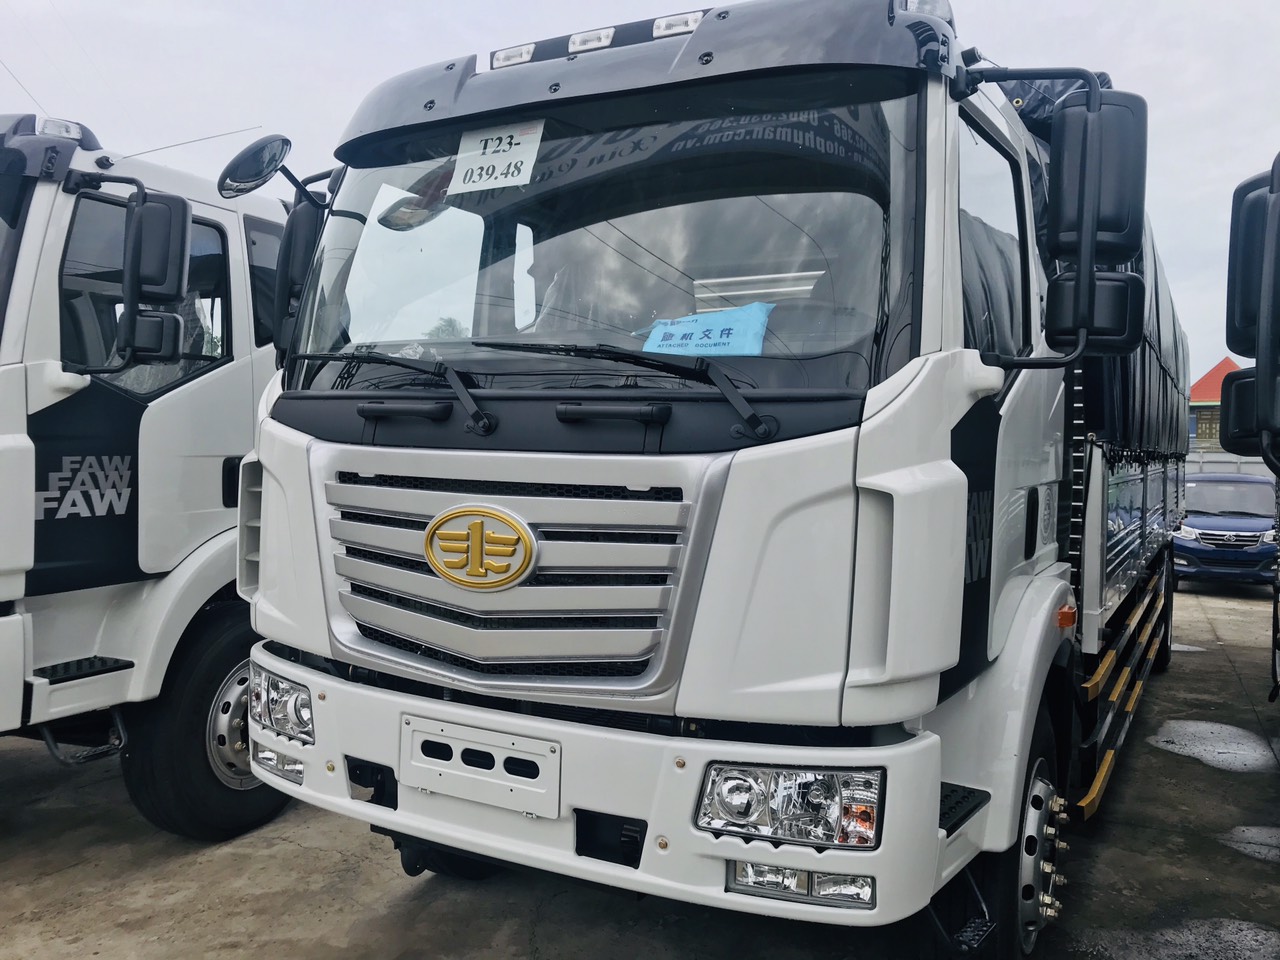 Xe tải FAW 8T5 thùng dài 8m - 0982803747-0